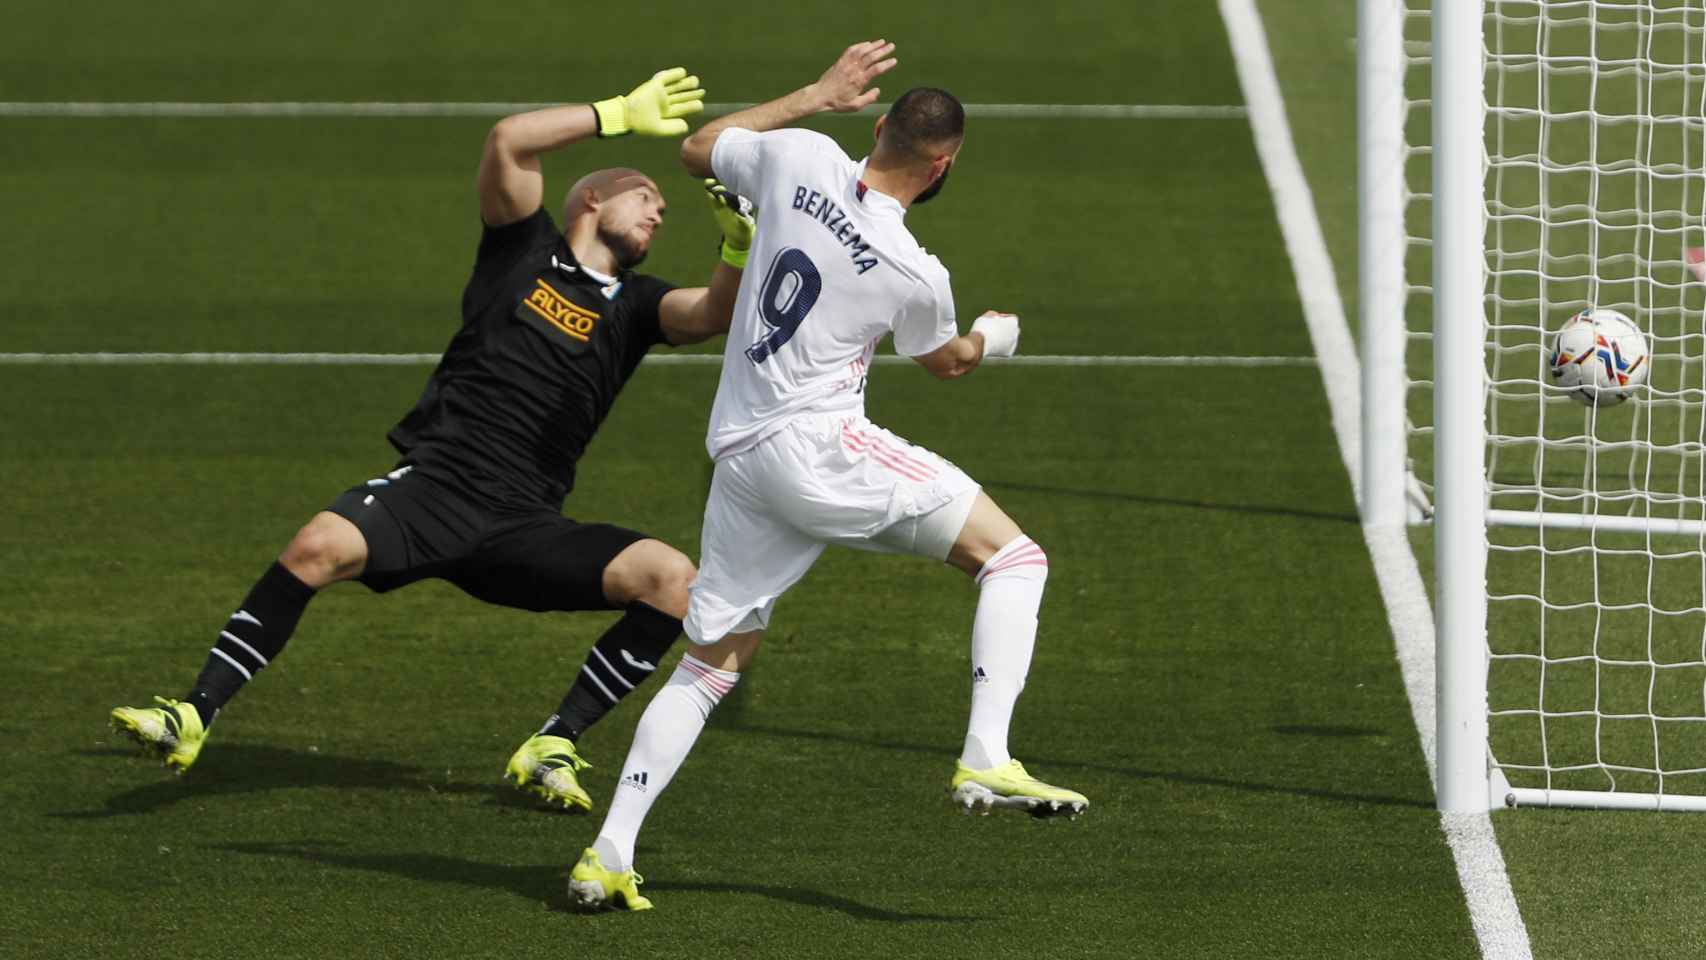 Karim Benzema logra marcar al Eibar pero el tanto es anulado por fuera de juego previo